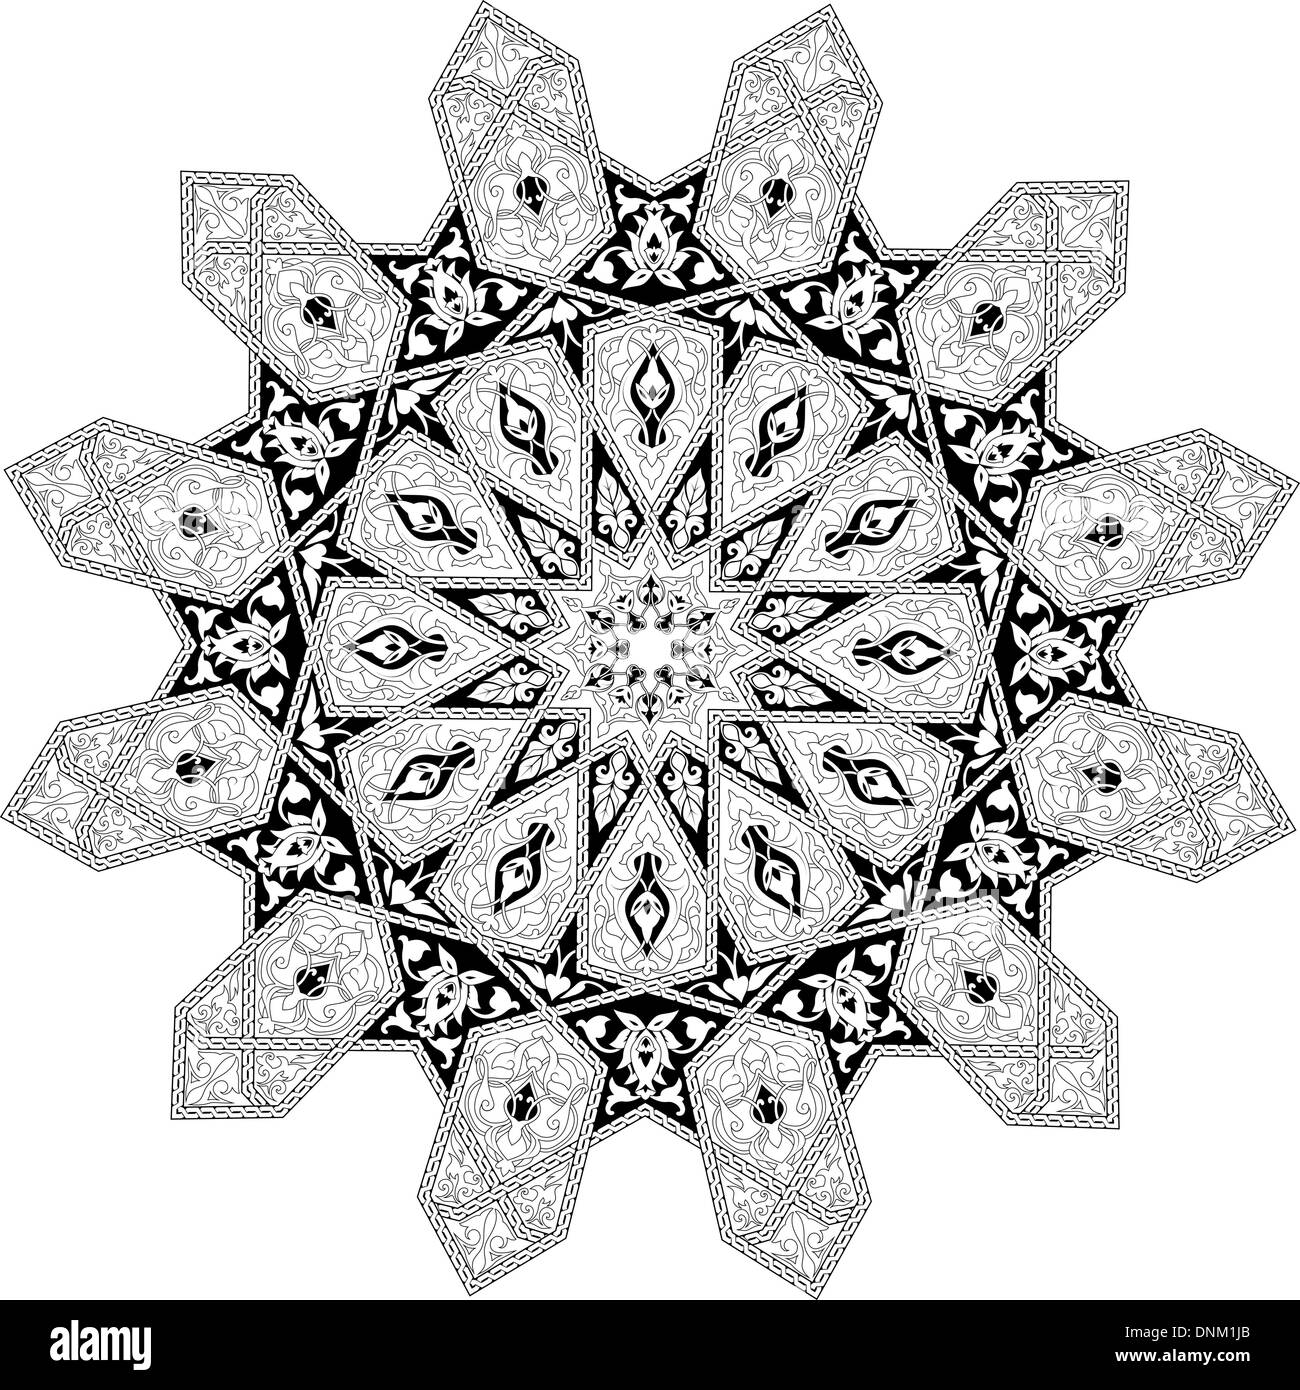 Schwarz / weiß arabischen Nahen Osten Blumenmuster Motiv, basierend auf arabisches ornament Stock Vektor